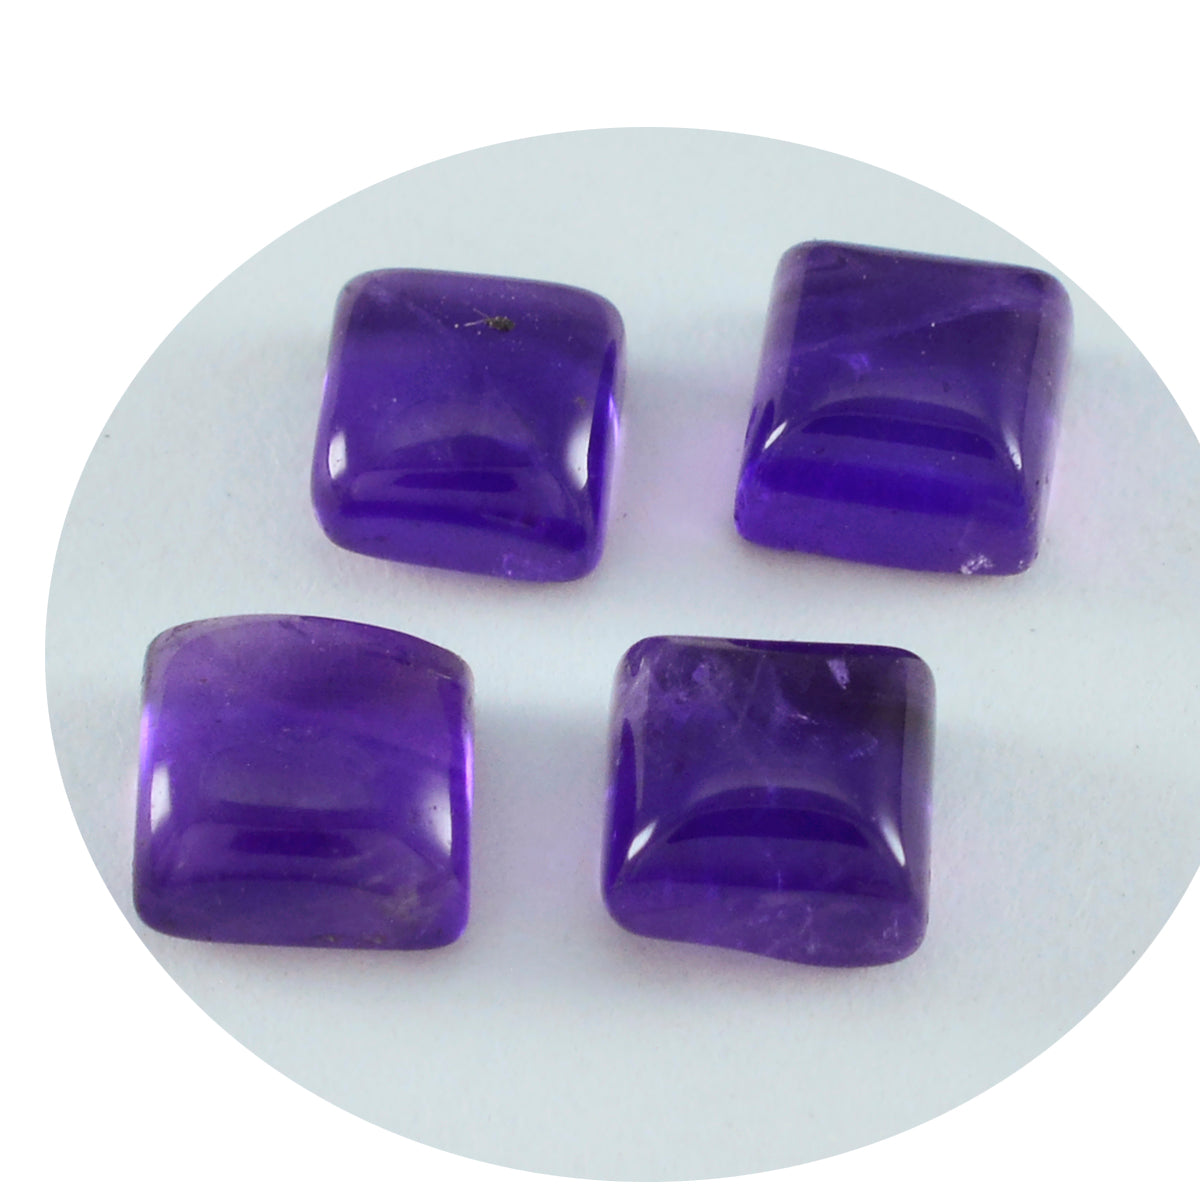 riyogems 1pc cabochon améthyste violet 13x13 mm forme carrée jolie pierre précieuse de qualité